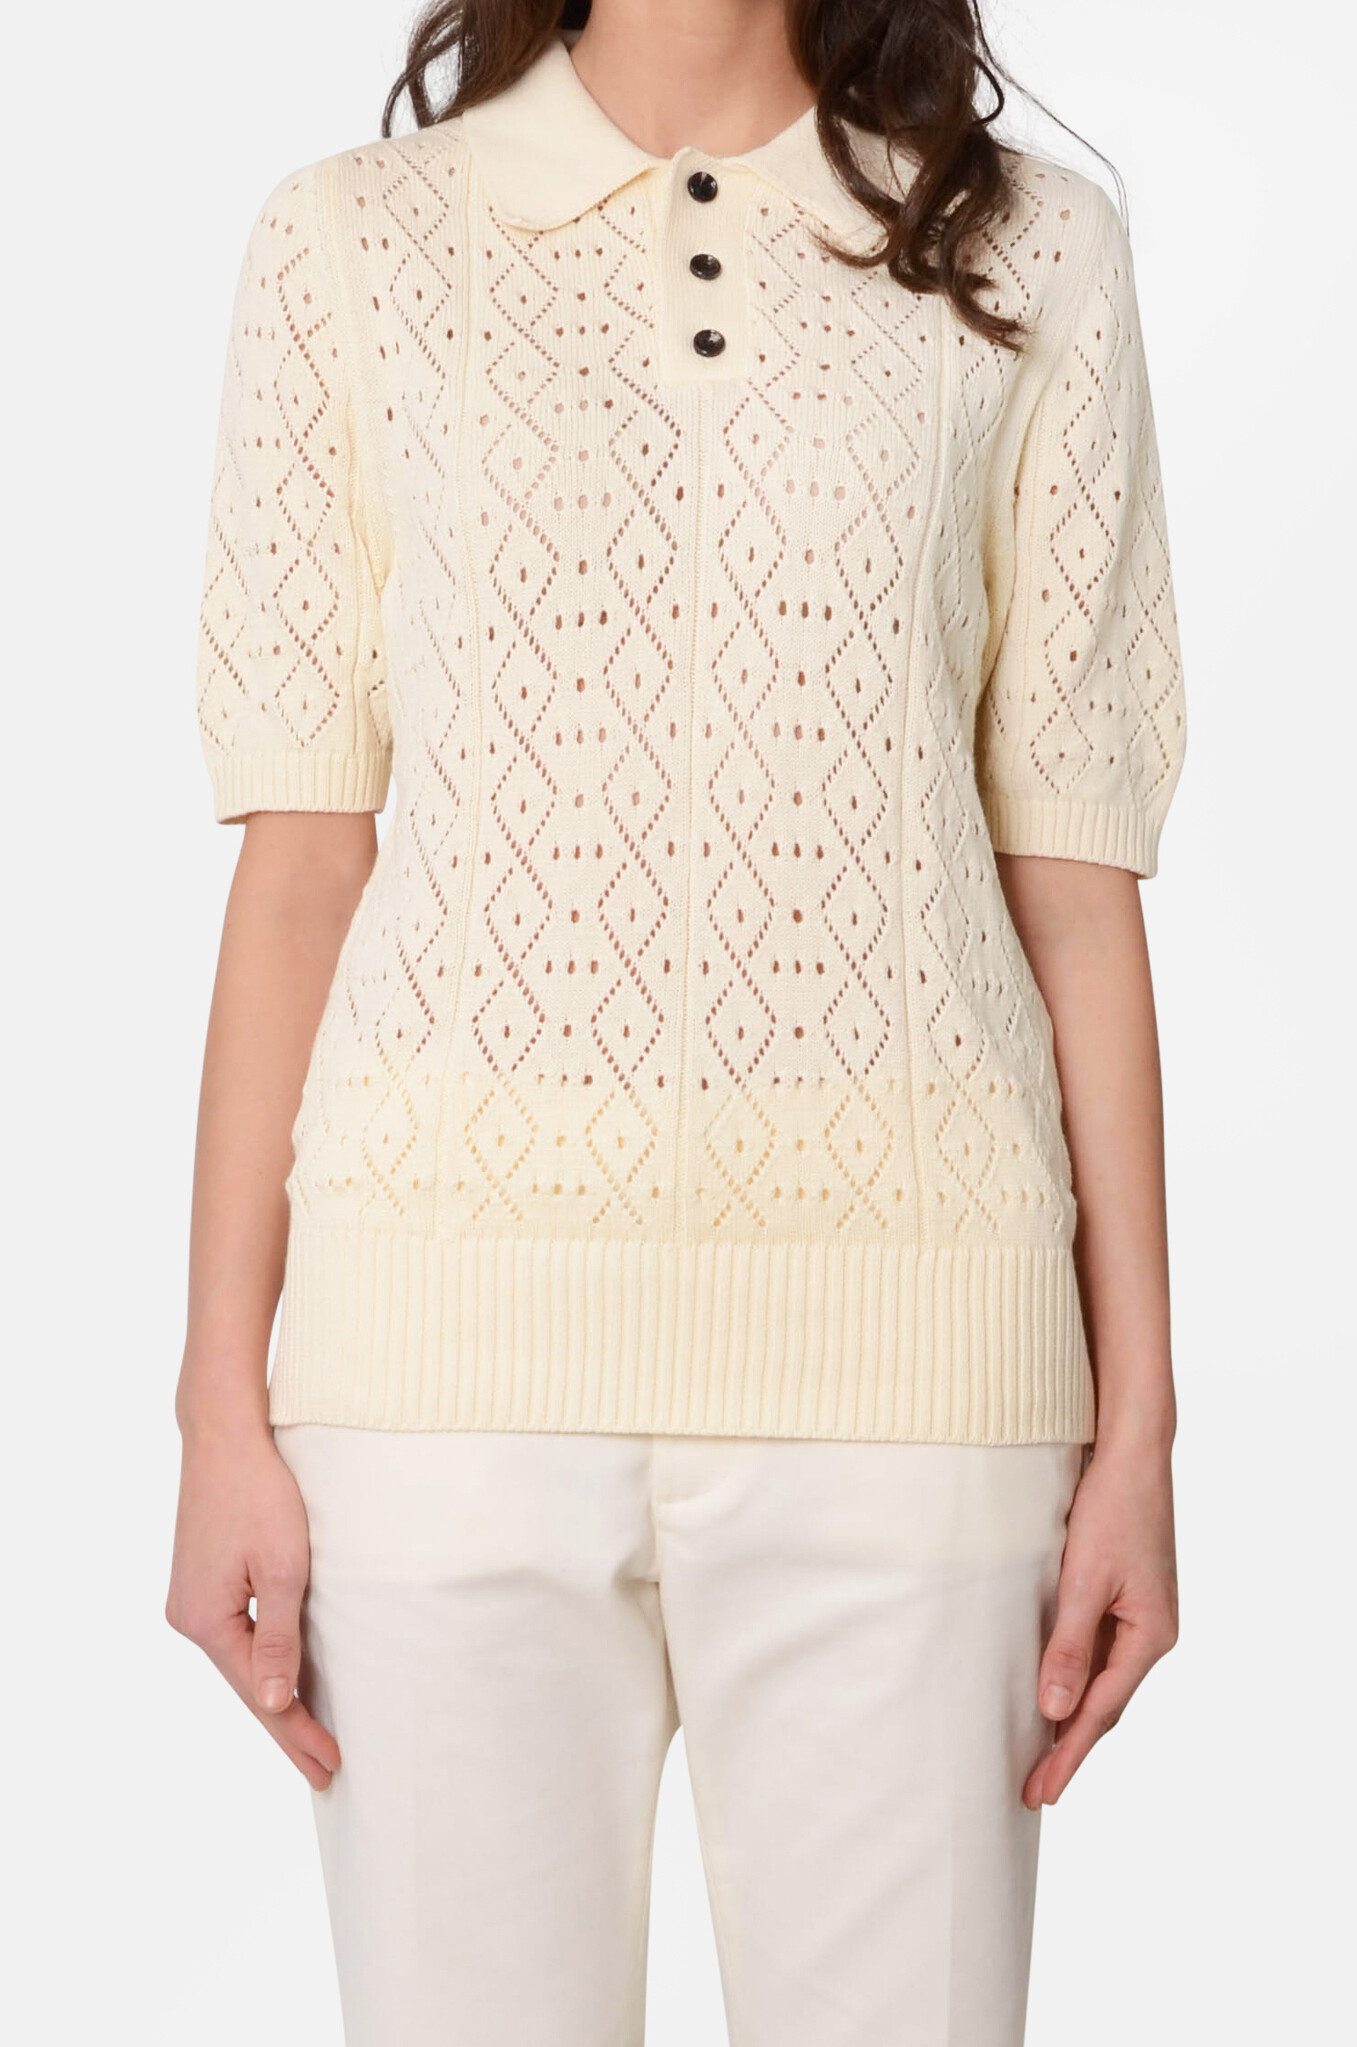 Crochet Polo Sweater in Cream-1